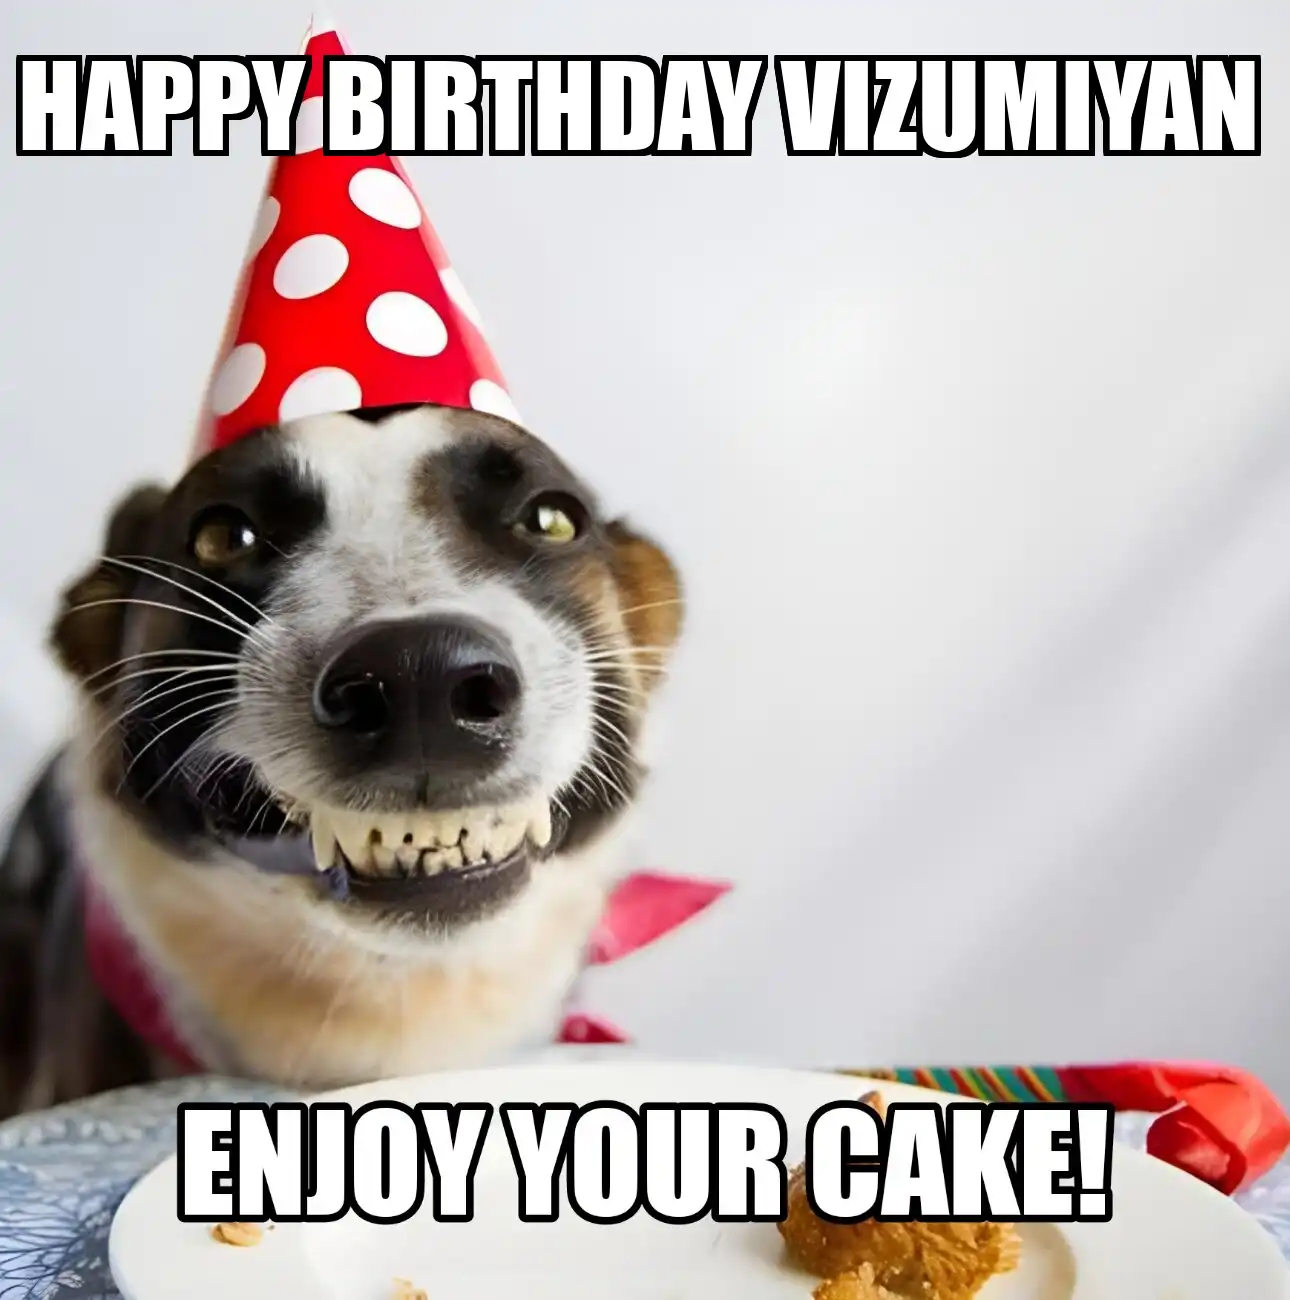 Happy Birthday Vizumiyan Enjoy Your Cake Dog Meme